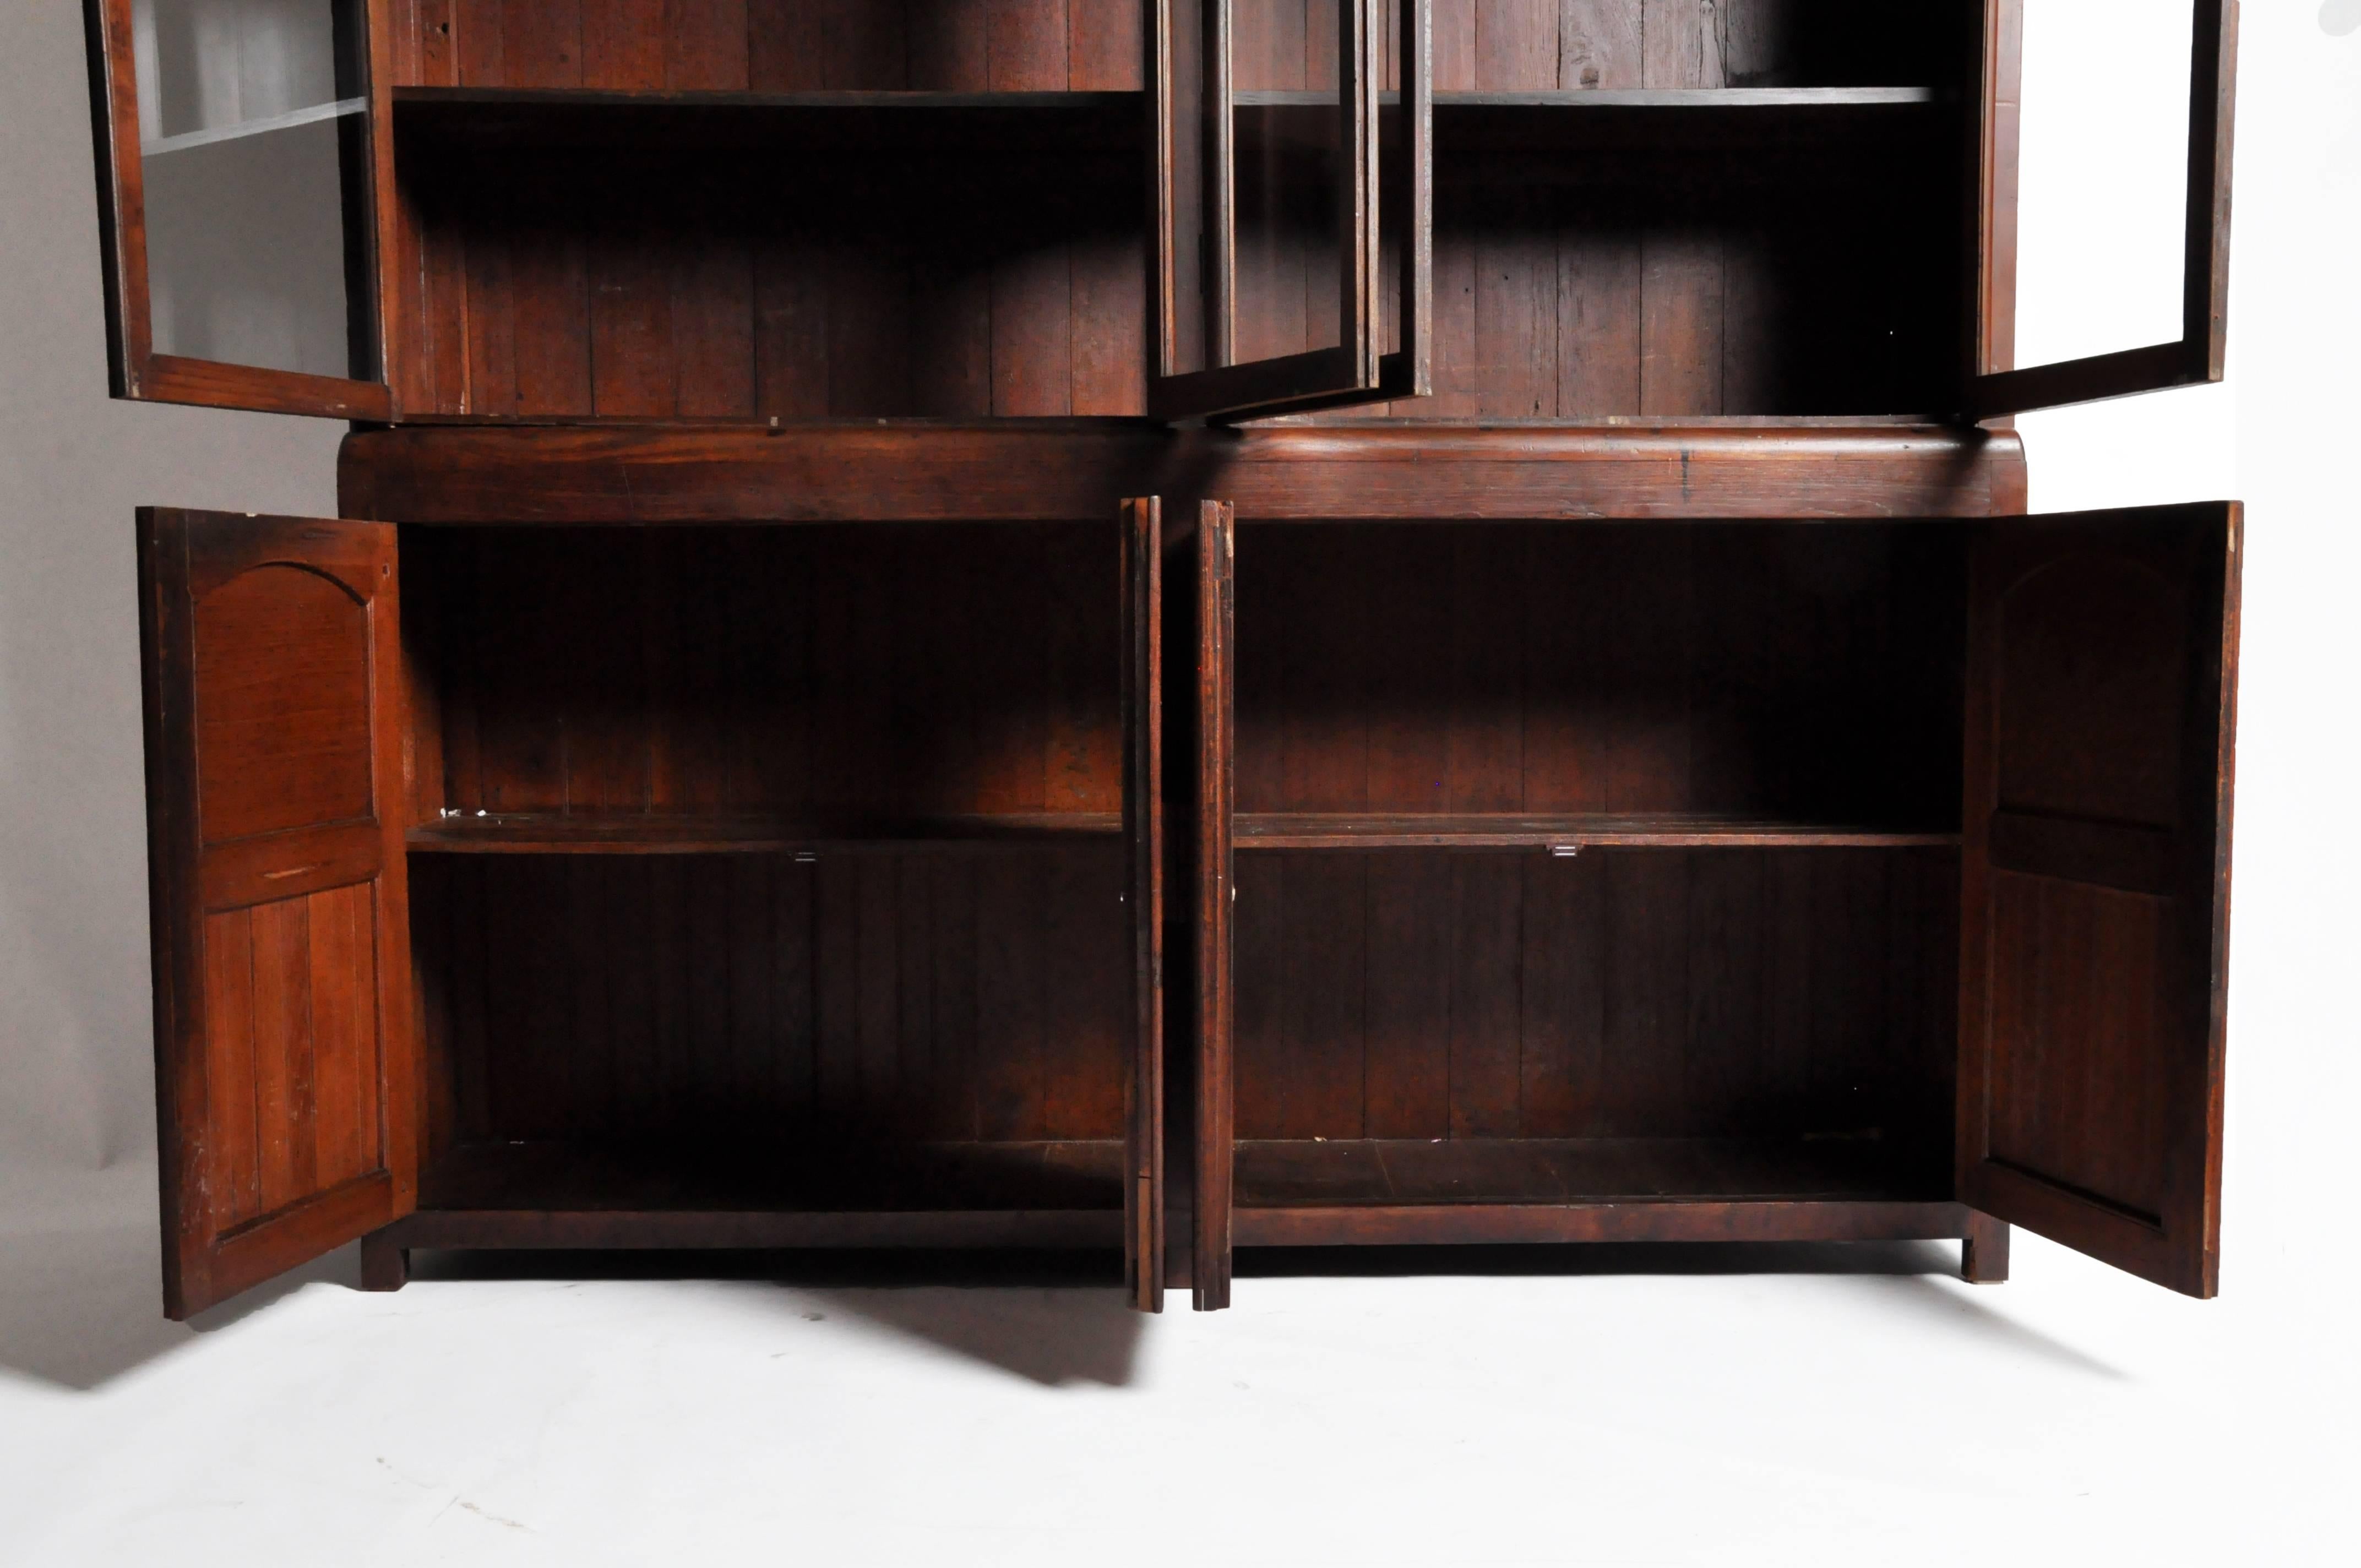 British Colonial Art Deco Bookcase 1